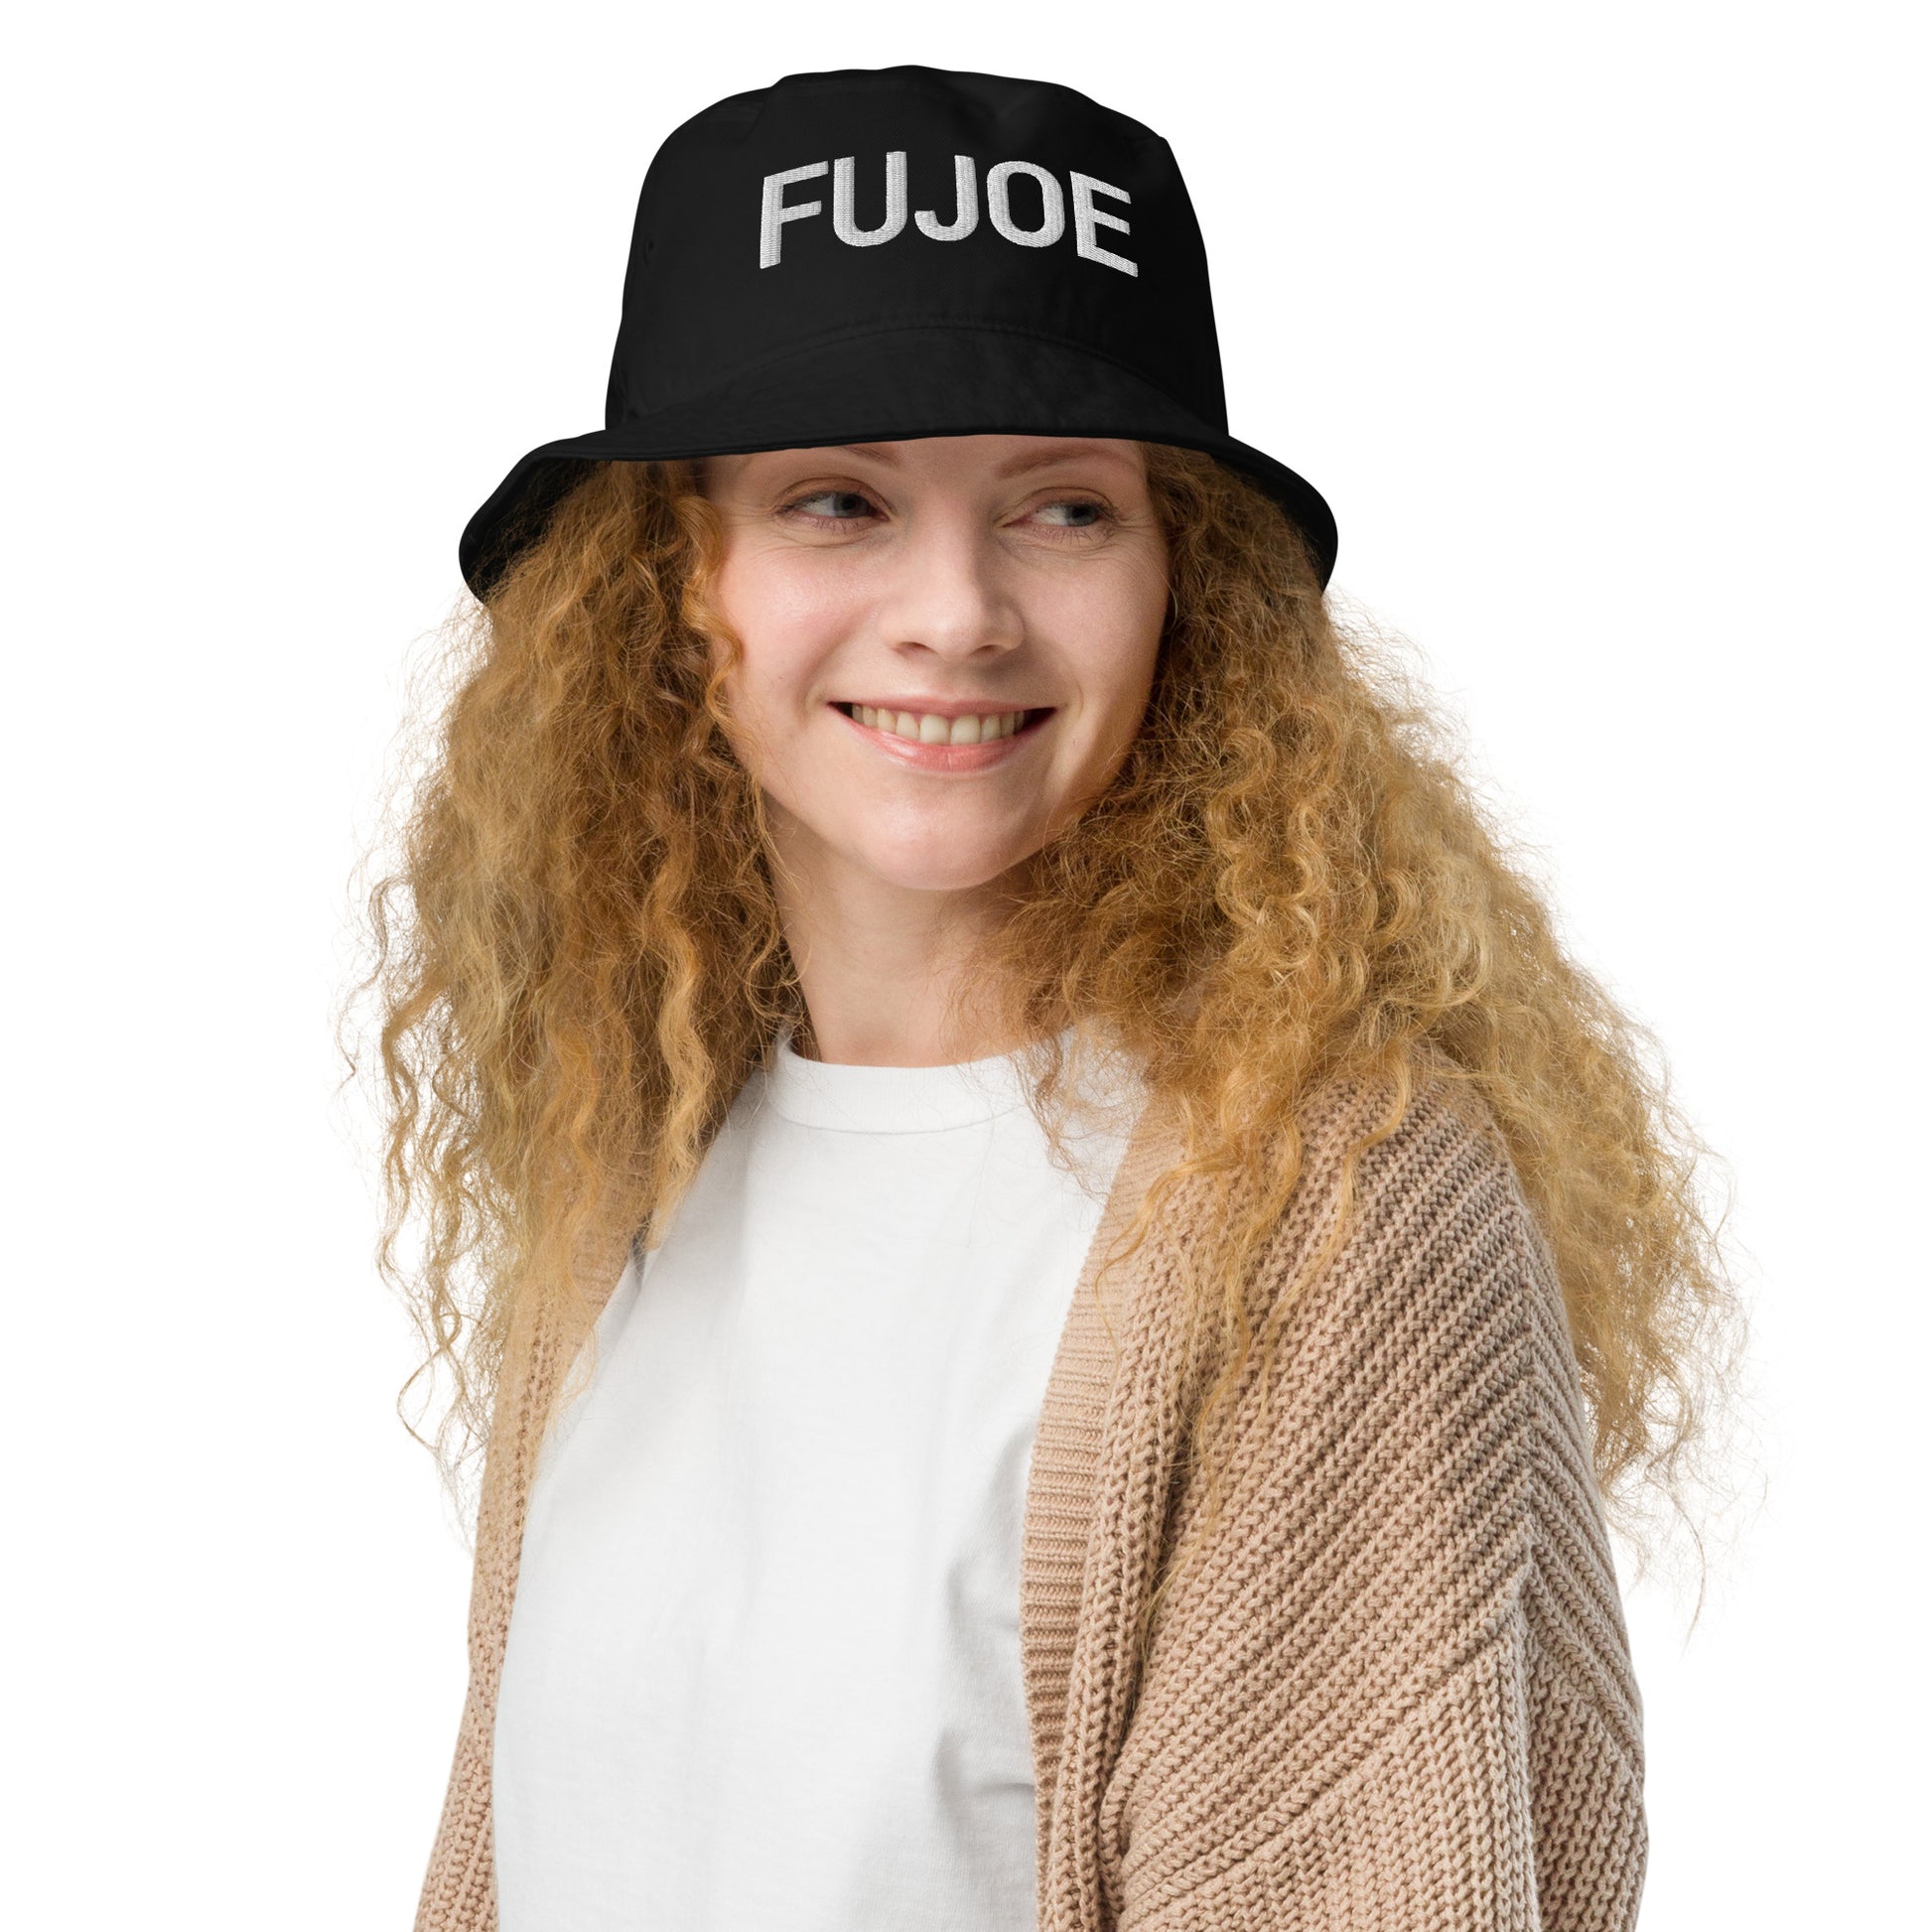 Fujoe hat / Fujoe Organic bucket hat